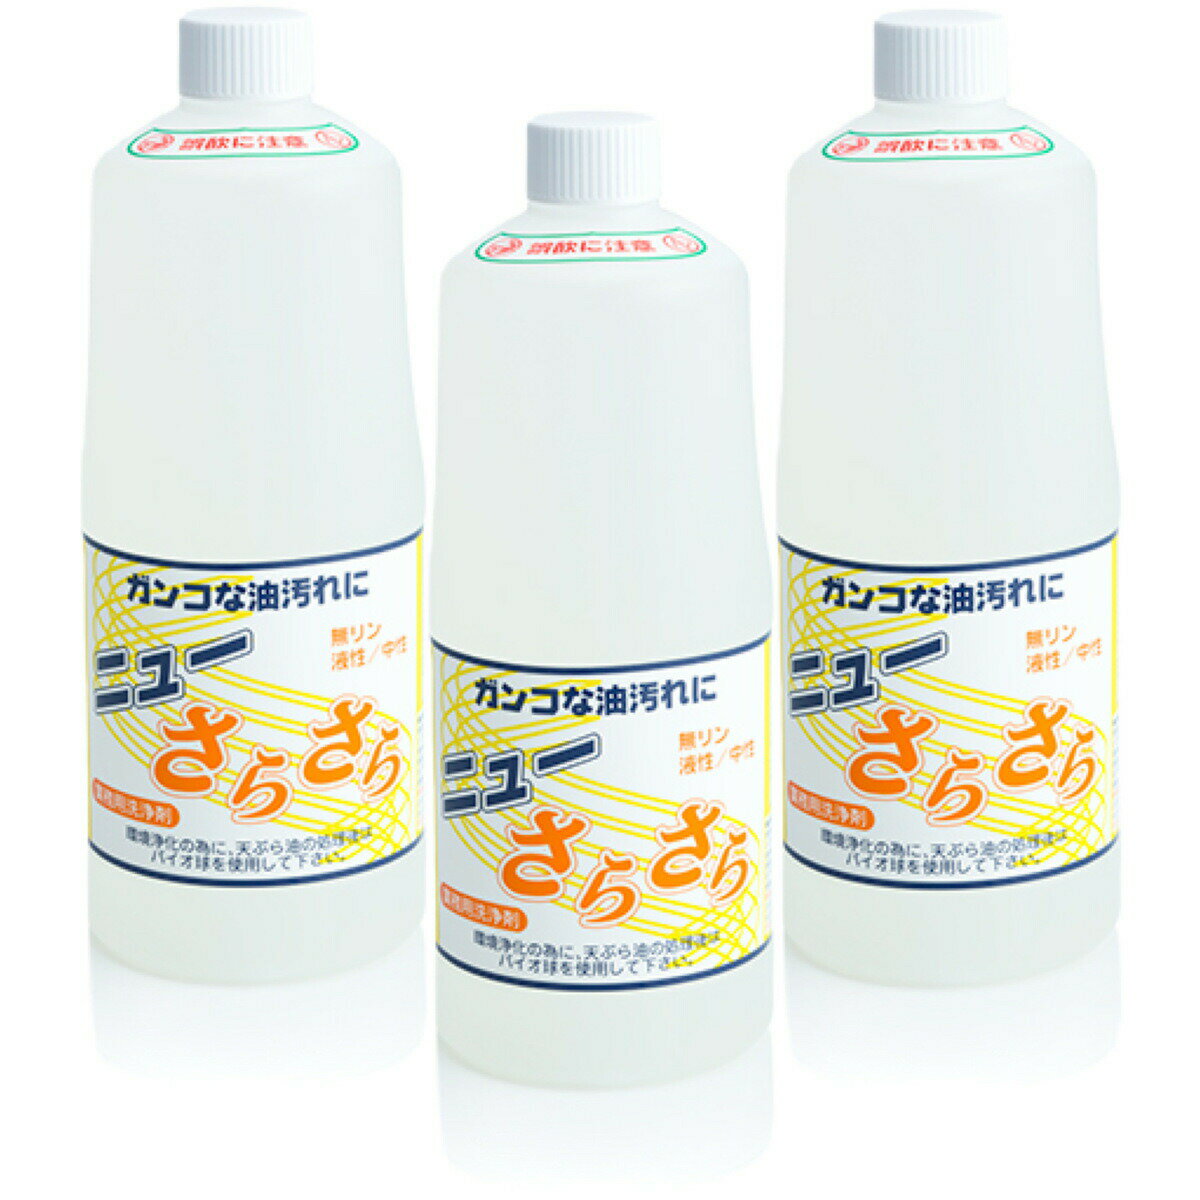 油処理 油吸収パッド 8個入 揚げ物 油 処理 吸収 簡単 油を吸い取る 台所用品 吸いとるパッド 日本製